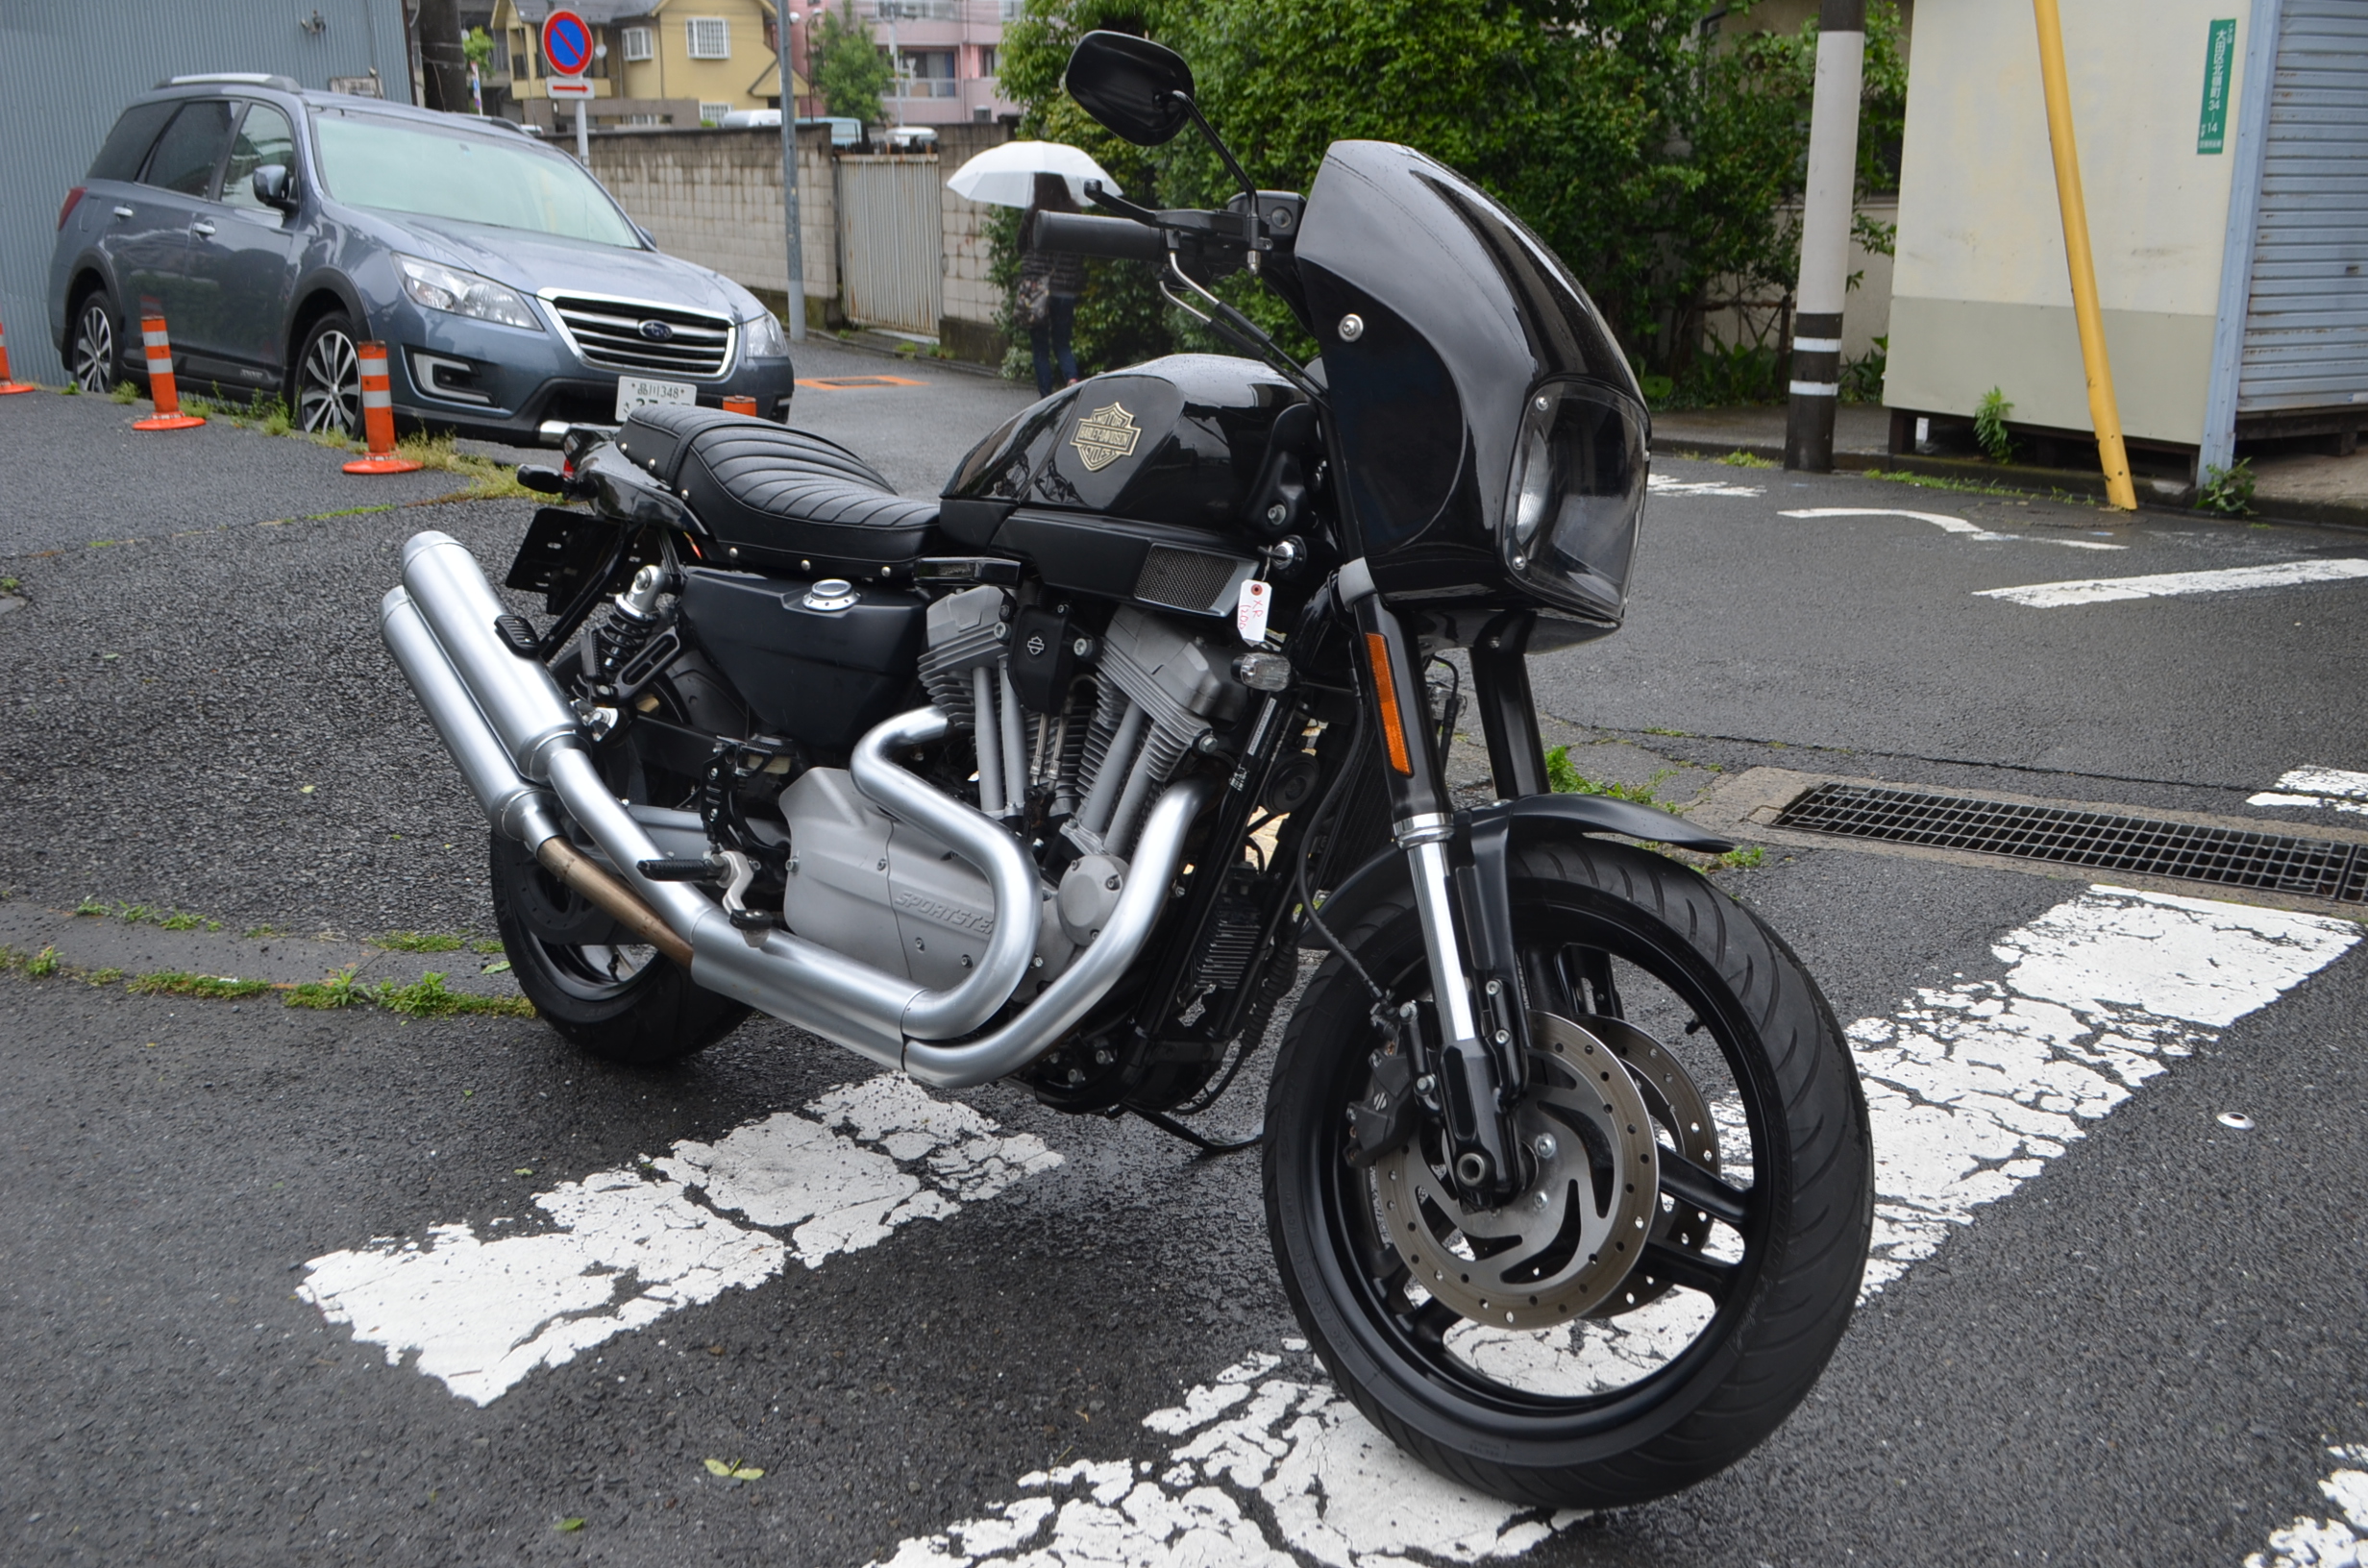 Yamaha マジェスティ250 トライク バイク買取金額掲載中のバイクブーン